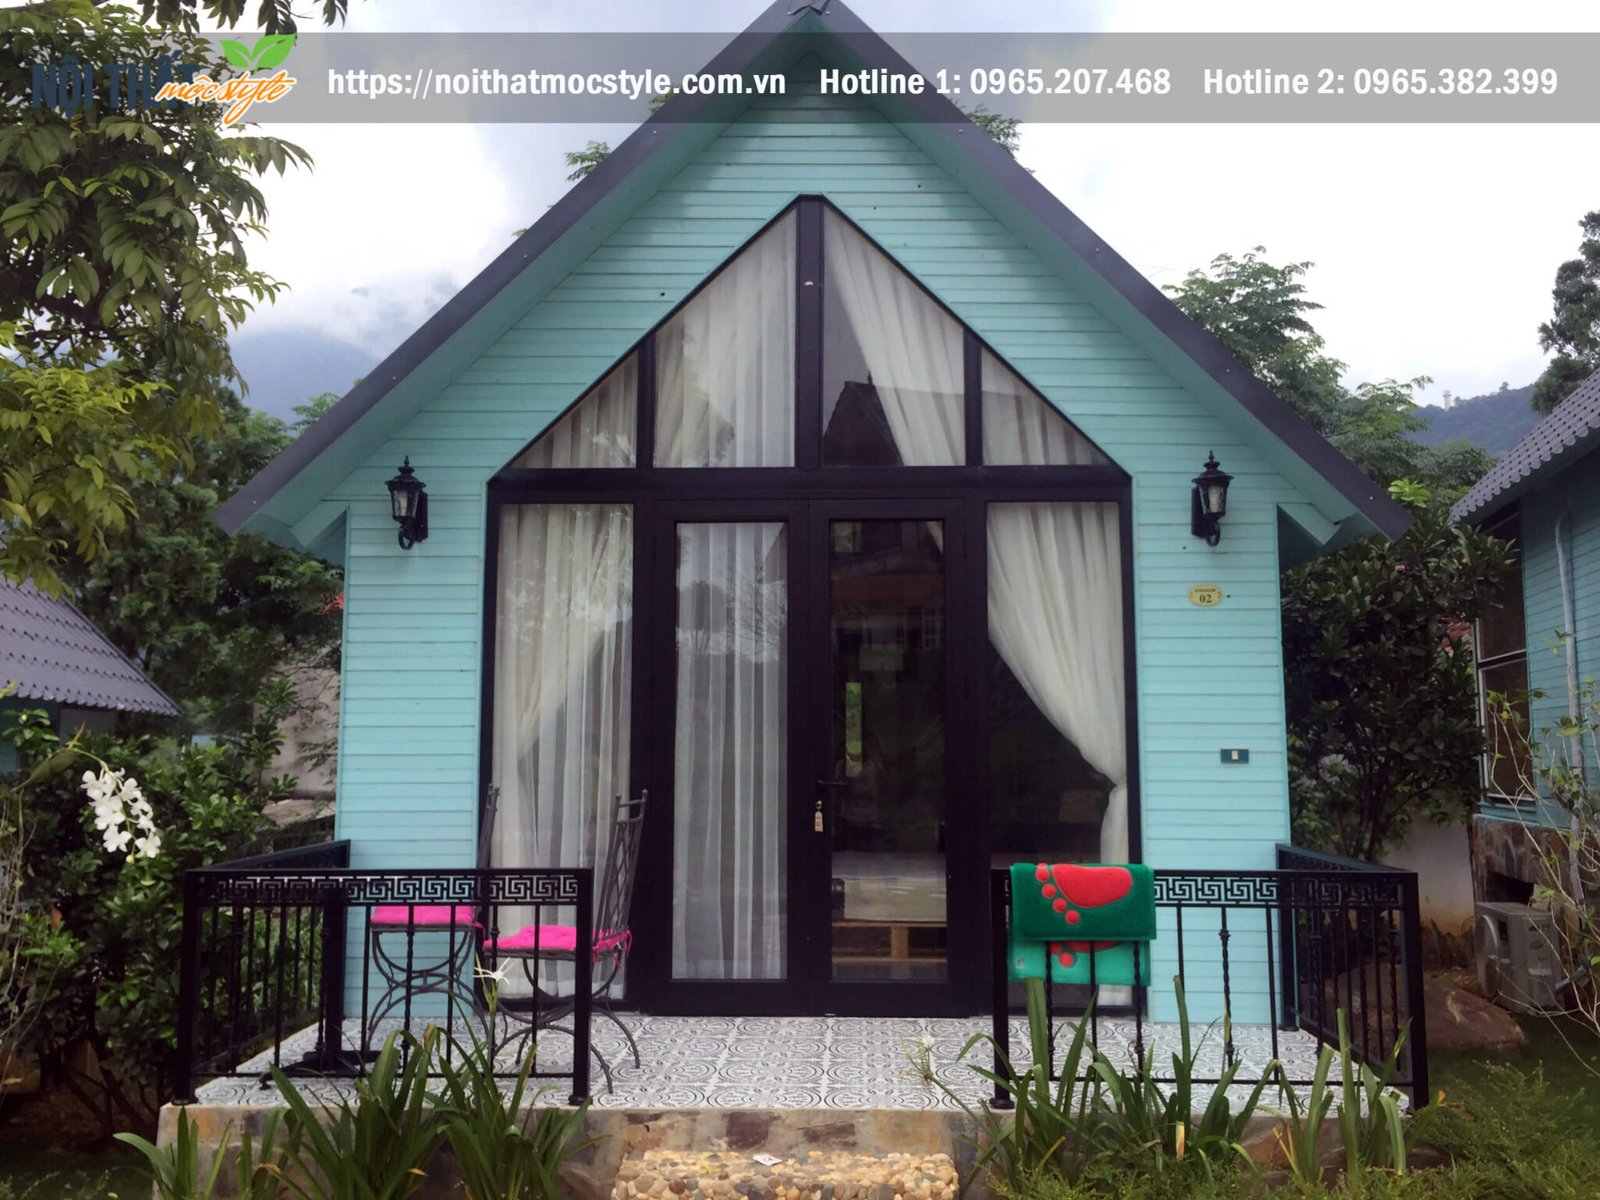 Căn nhà gỗ nhỏ xinh được sơn màu xanh bắt mắt, gợi cảm giác dễ chịu, tươi mát